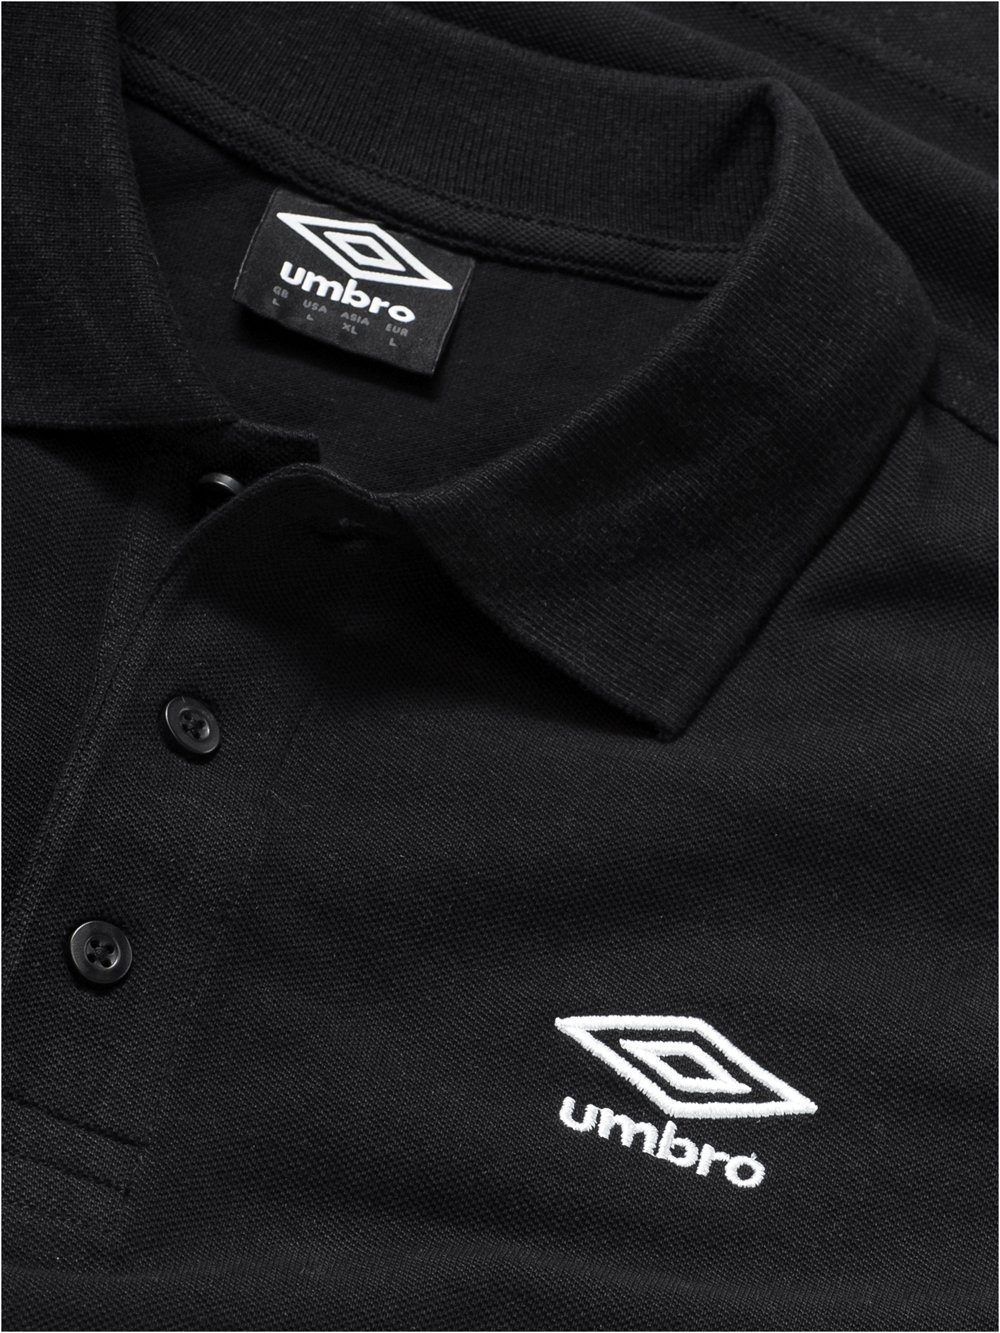 schwarz Piqué-Gewebe Poloshirt körniges aus Baumwolle Umbro